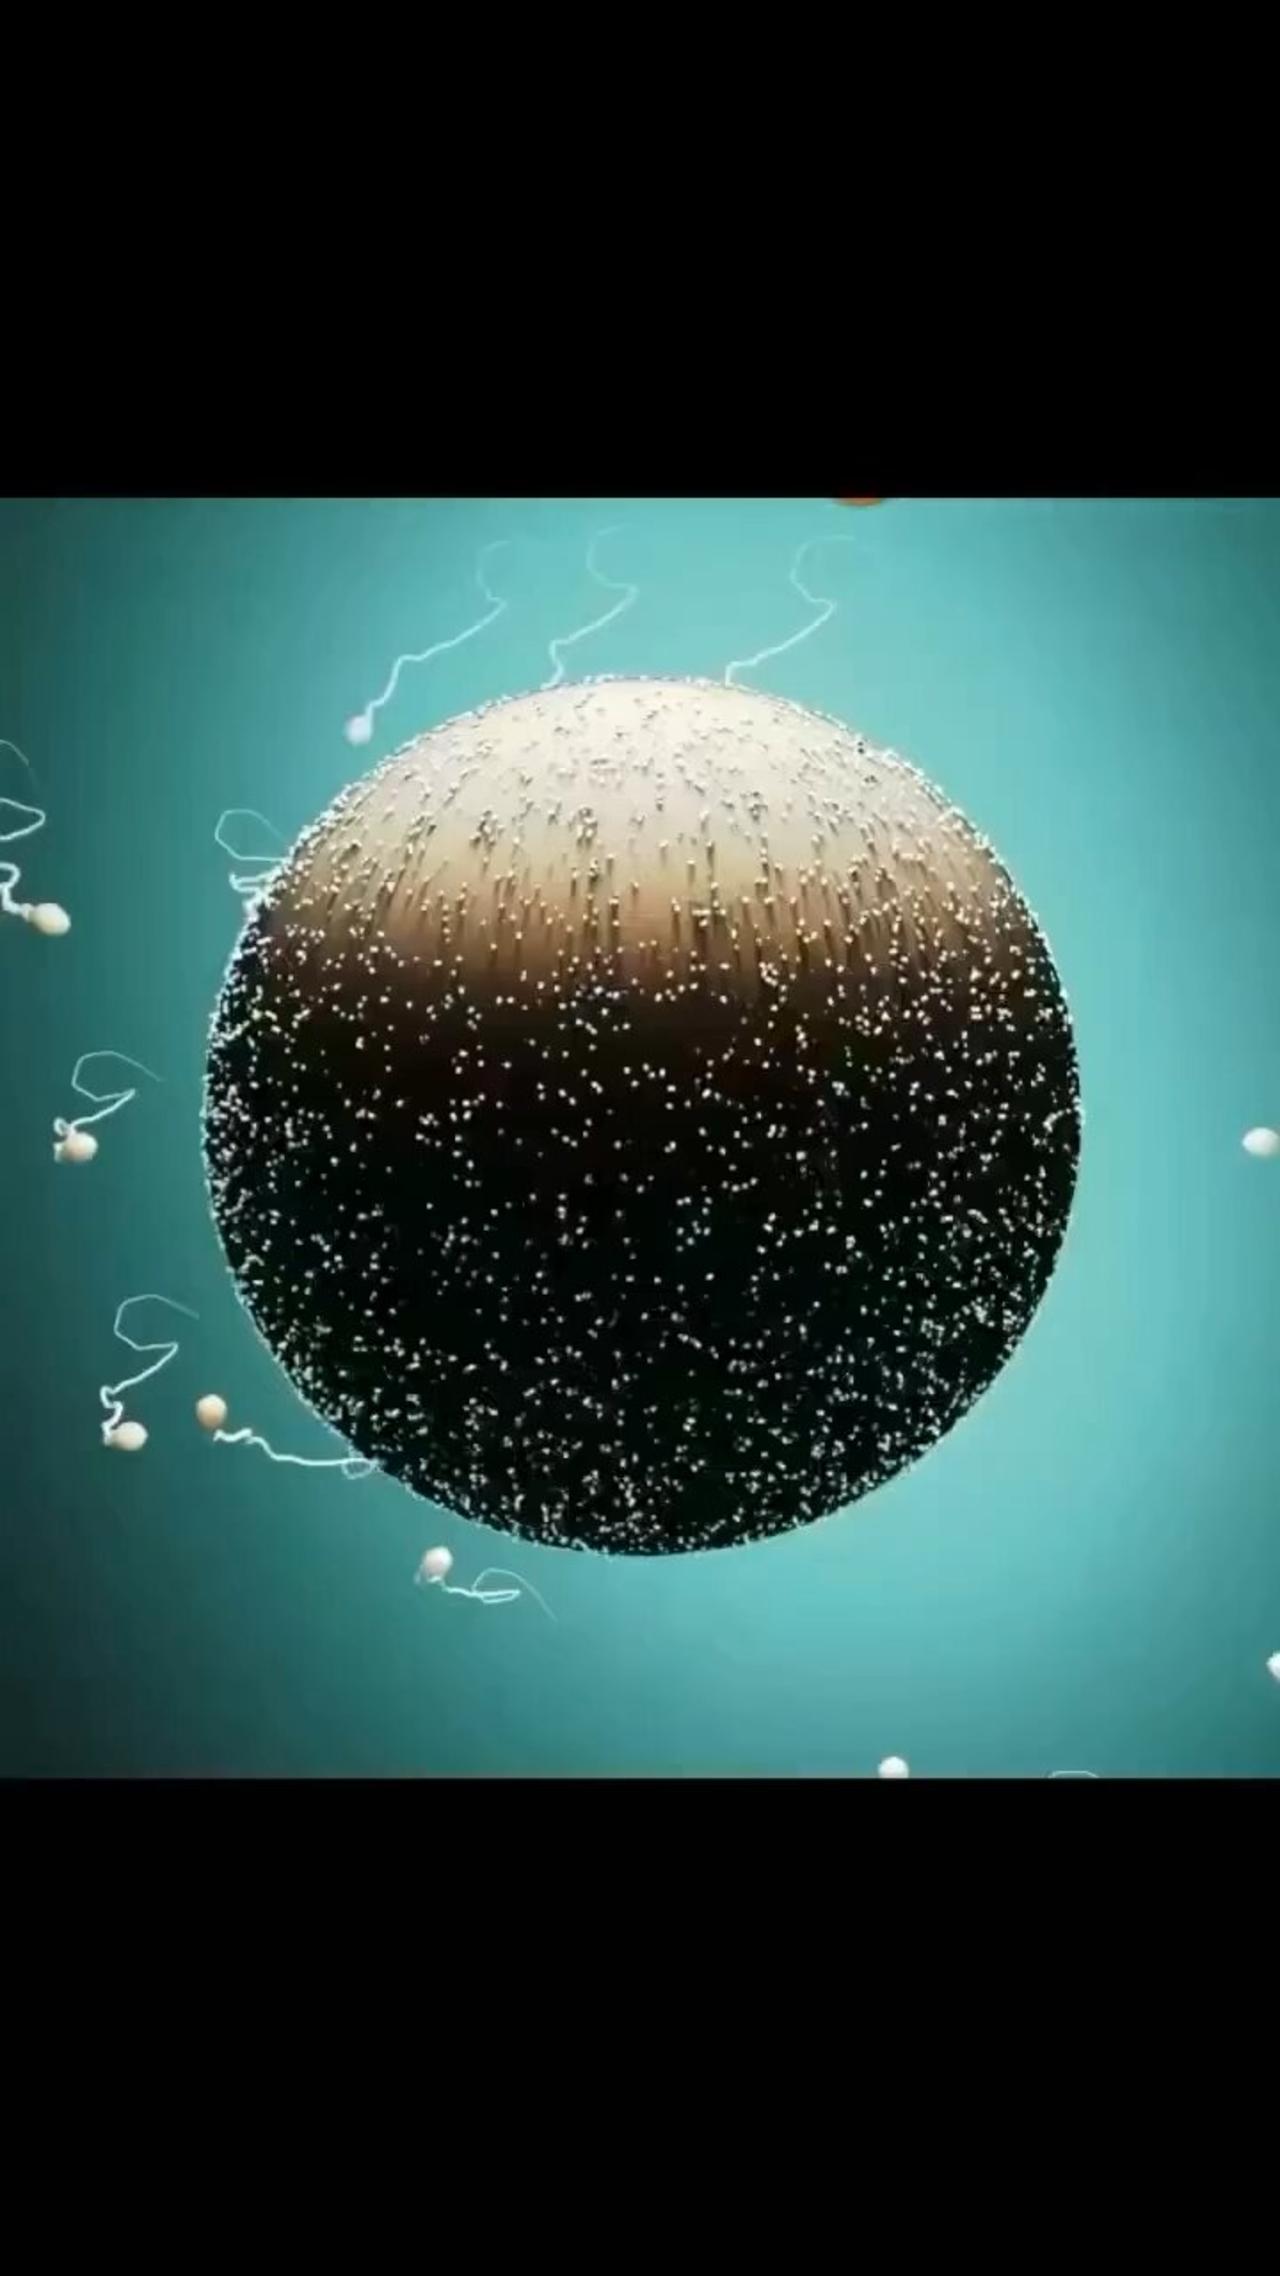 Fertilisation animation